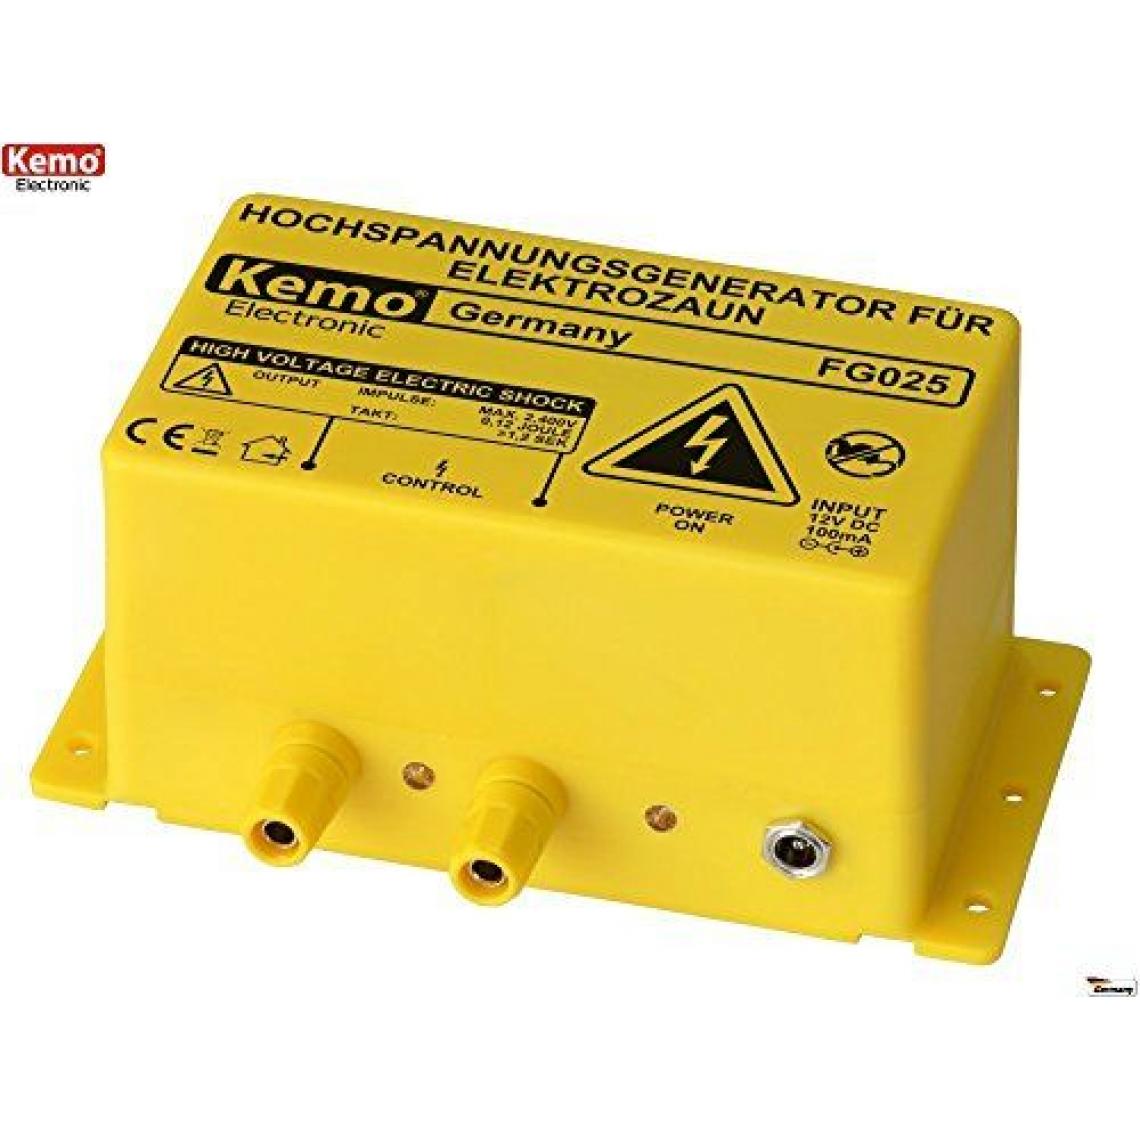 Kemo - Clôture électrique Kemo FG025 pour l'intérieur/extérieur - Accessoires de câblage